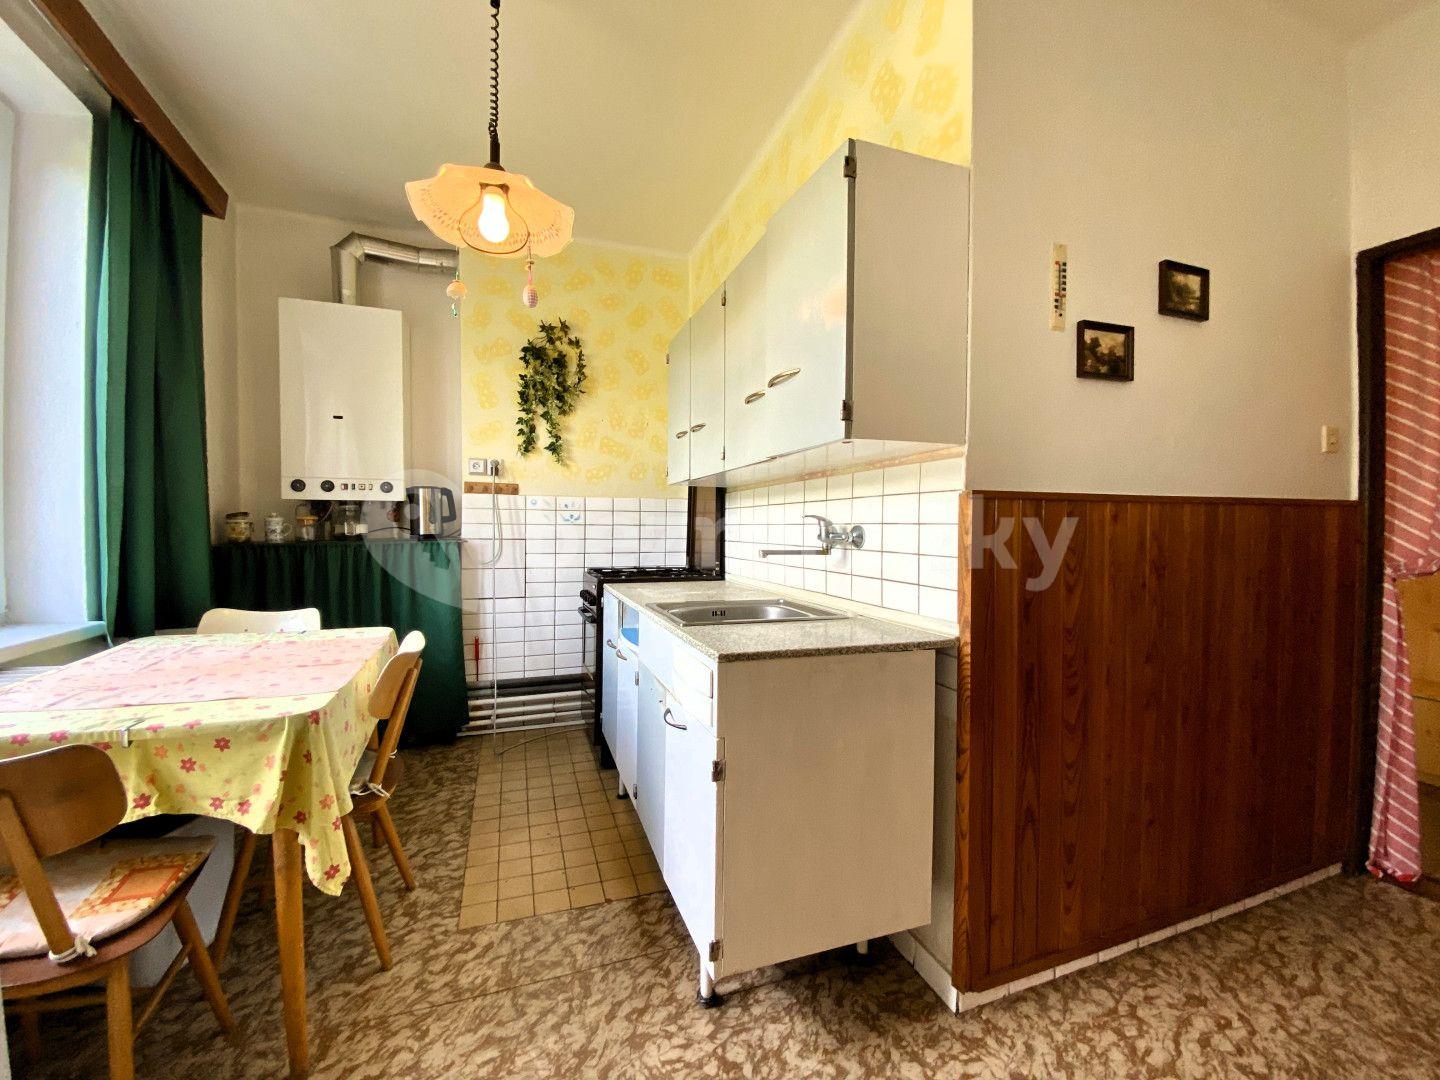 3 bedroom flat for sale, 60 m², Trojanovice, Moravskoslezský Region